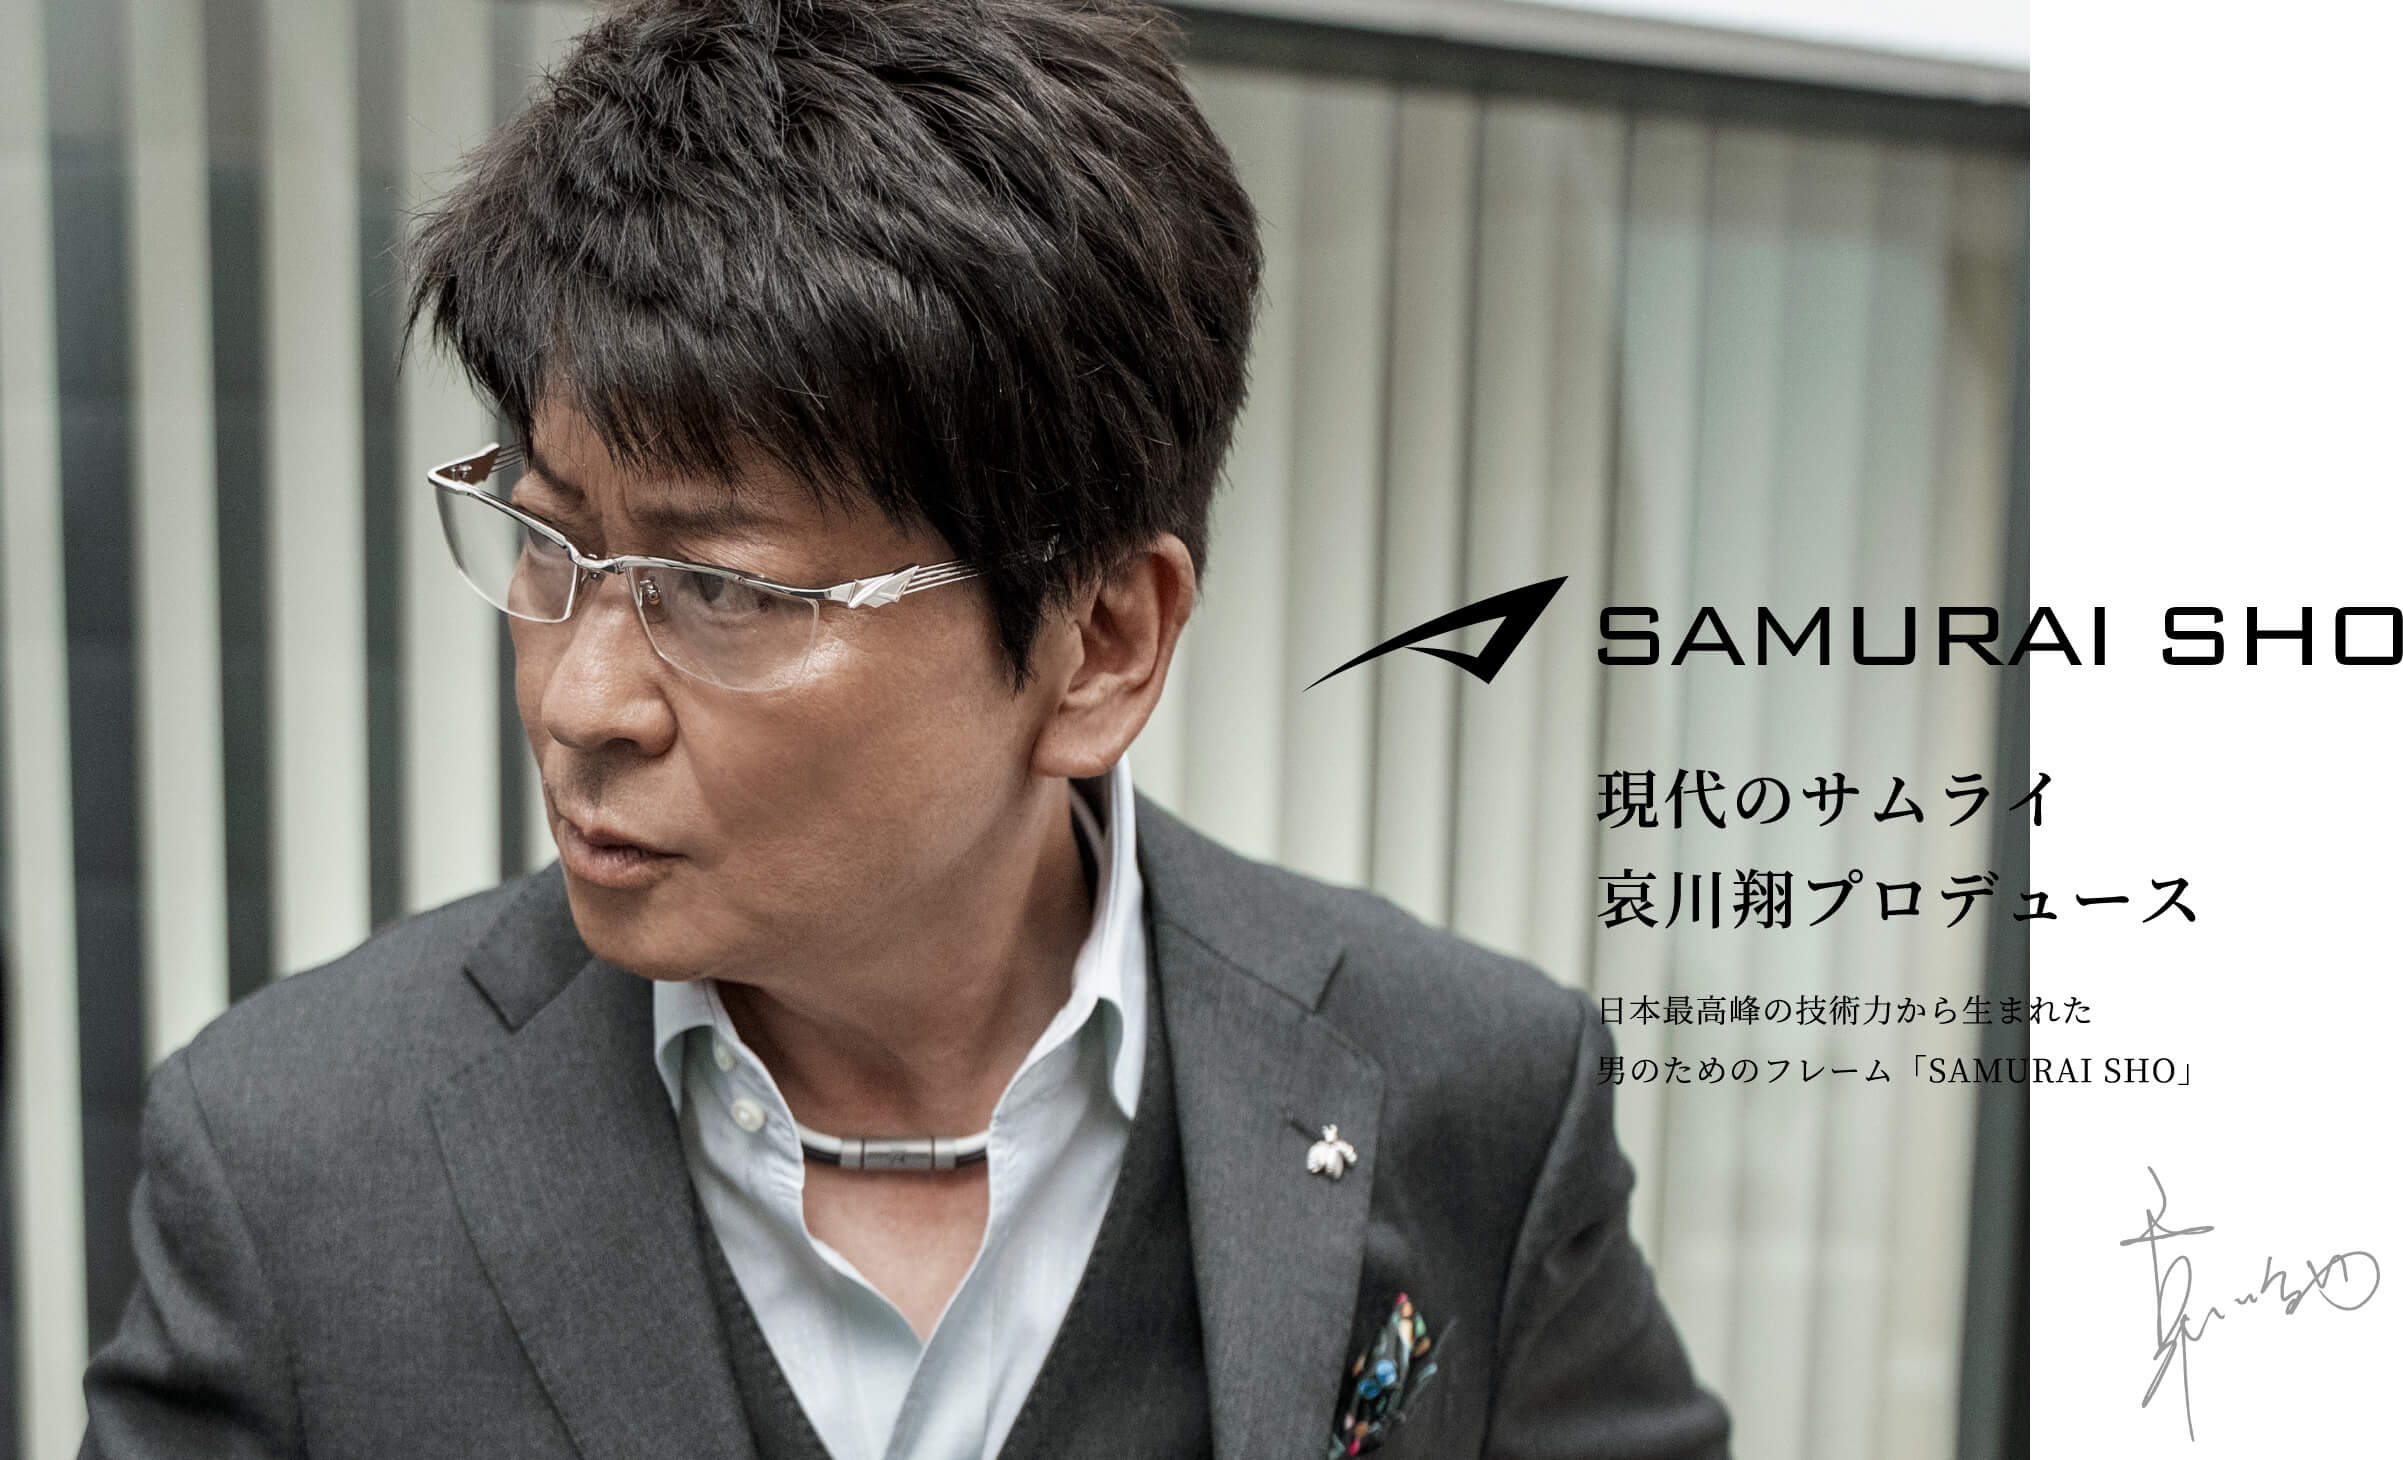 サムライ翔 samurai sho - fawema.org